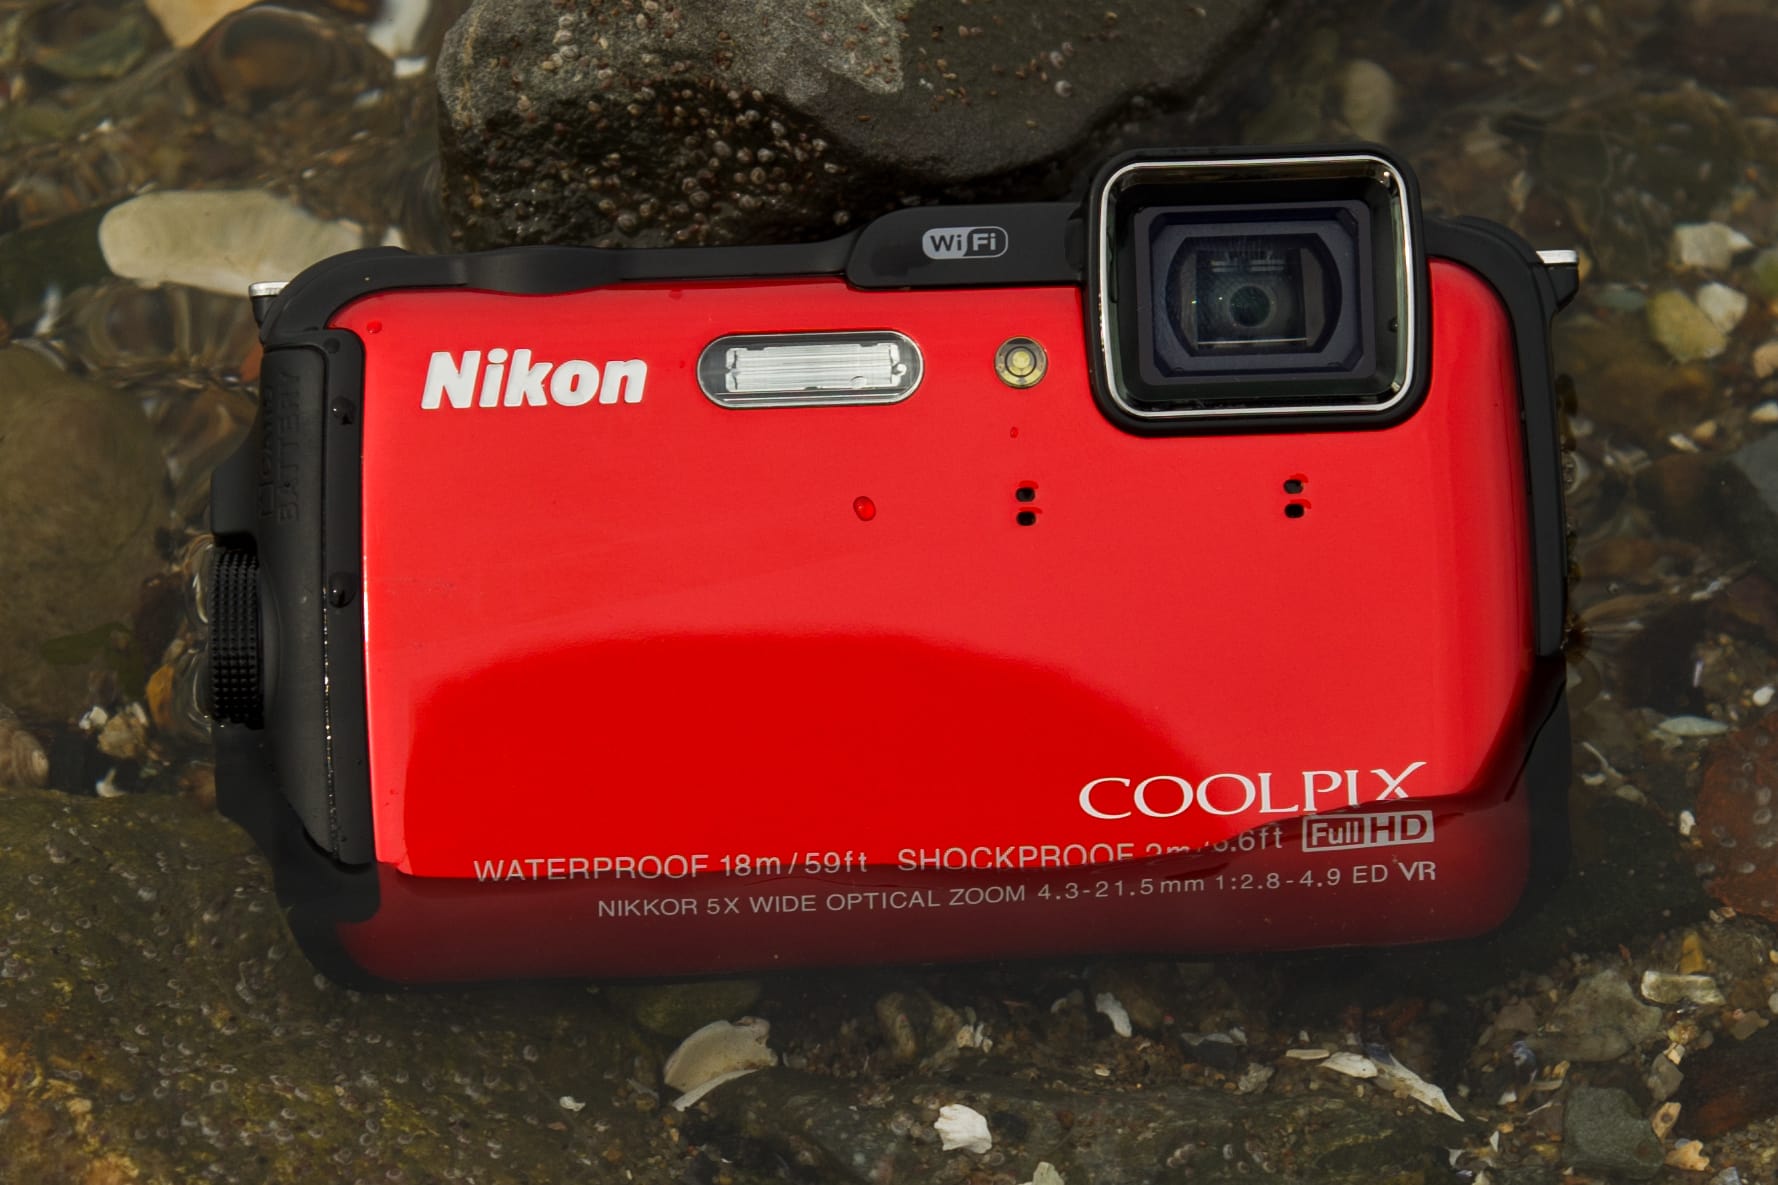 Nikon Coolpix Aw120 Digital Camera Review Cameras 8129